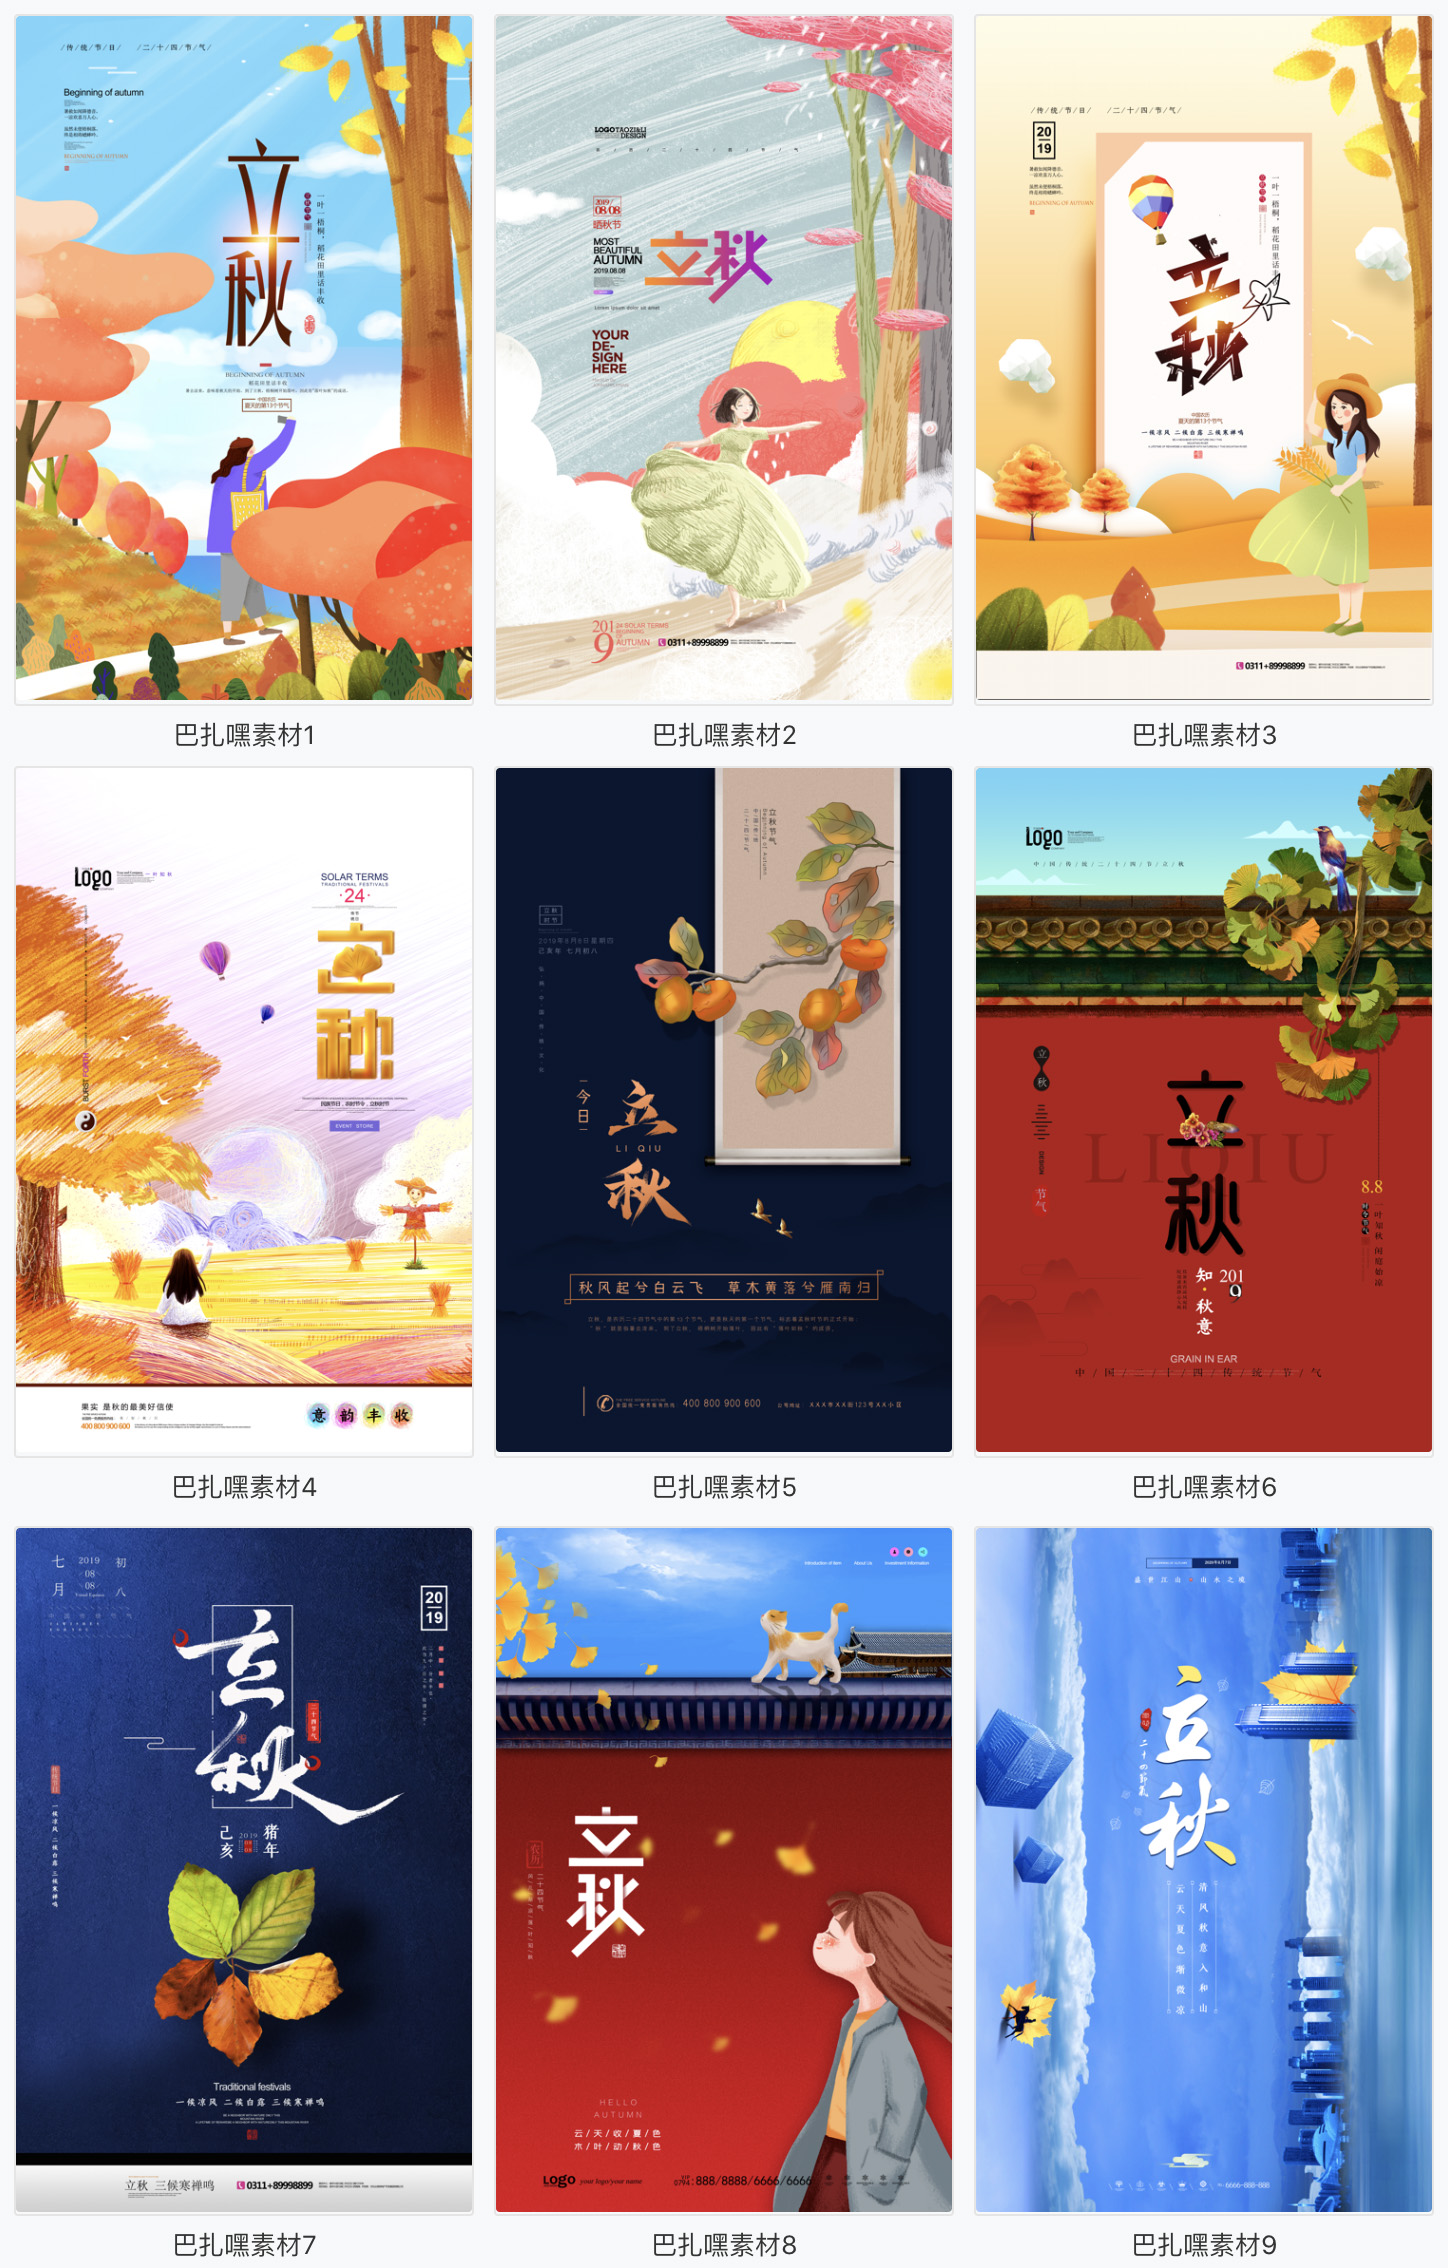 【立秋海报】24二十四节气立秋节日祝福广告促销海报背景图片PSD设计素材模板